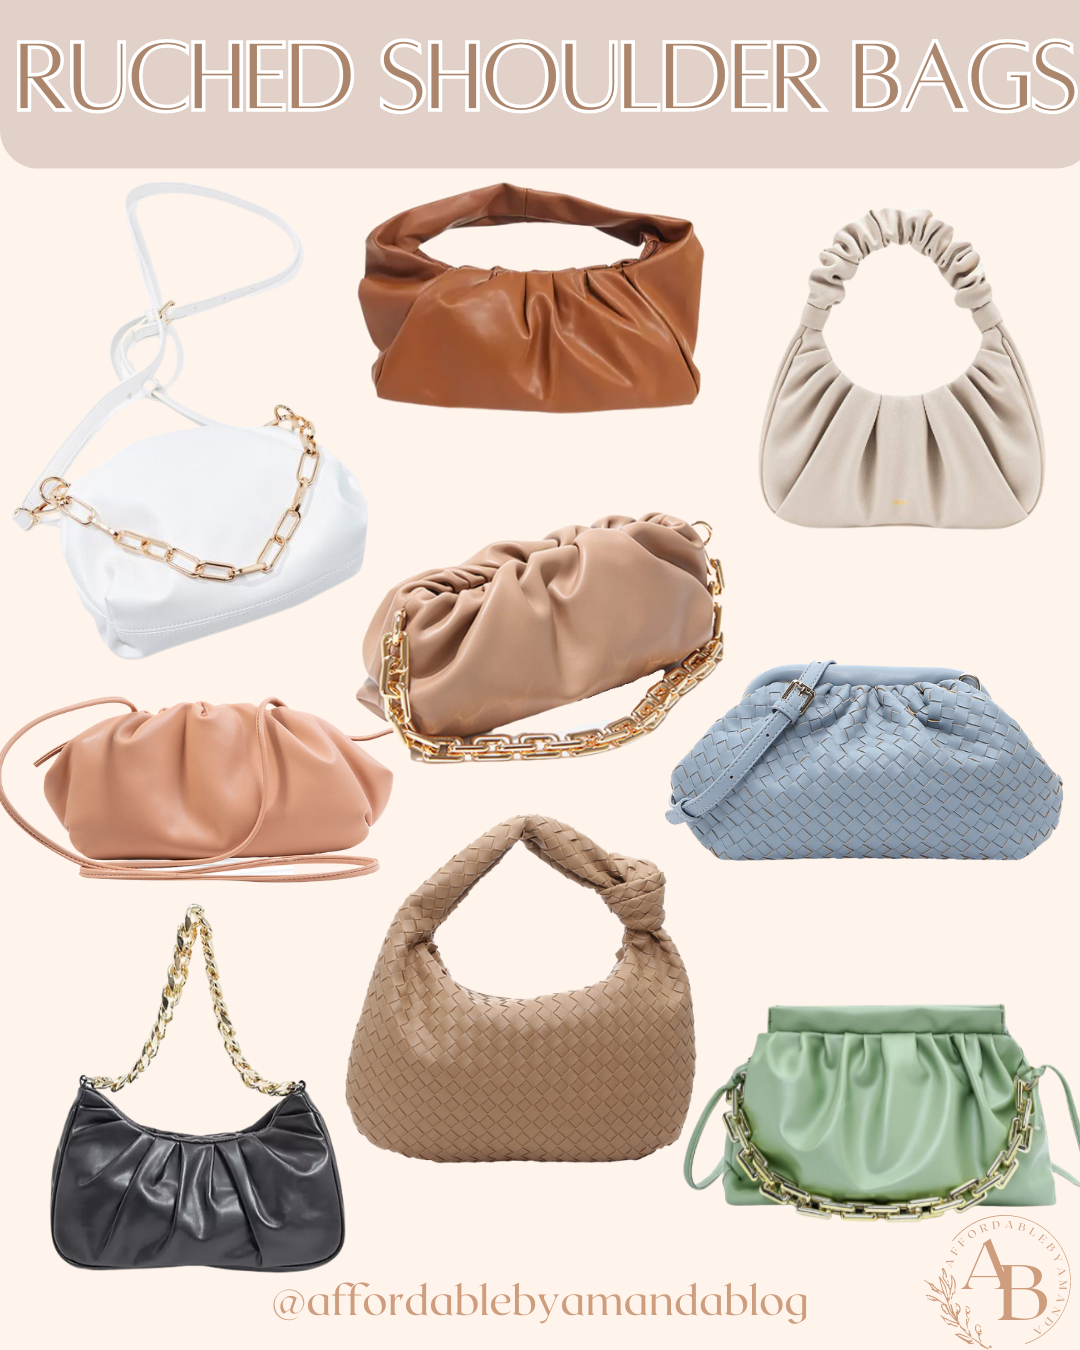 7 Popular Handbag Trends to Shop For 2021